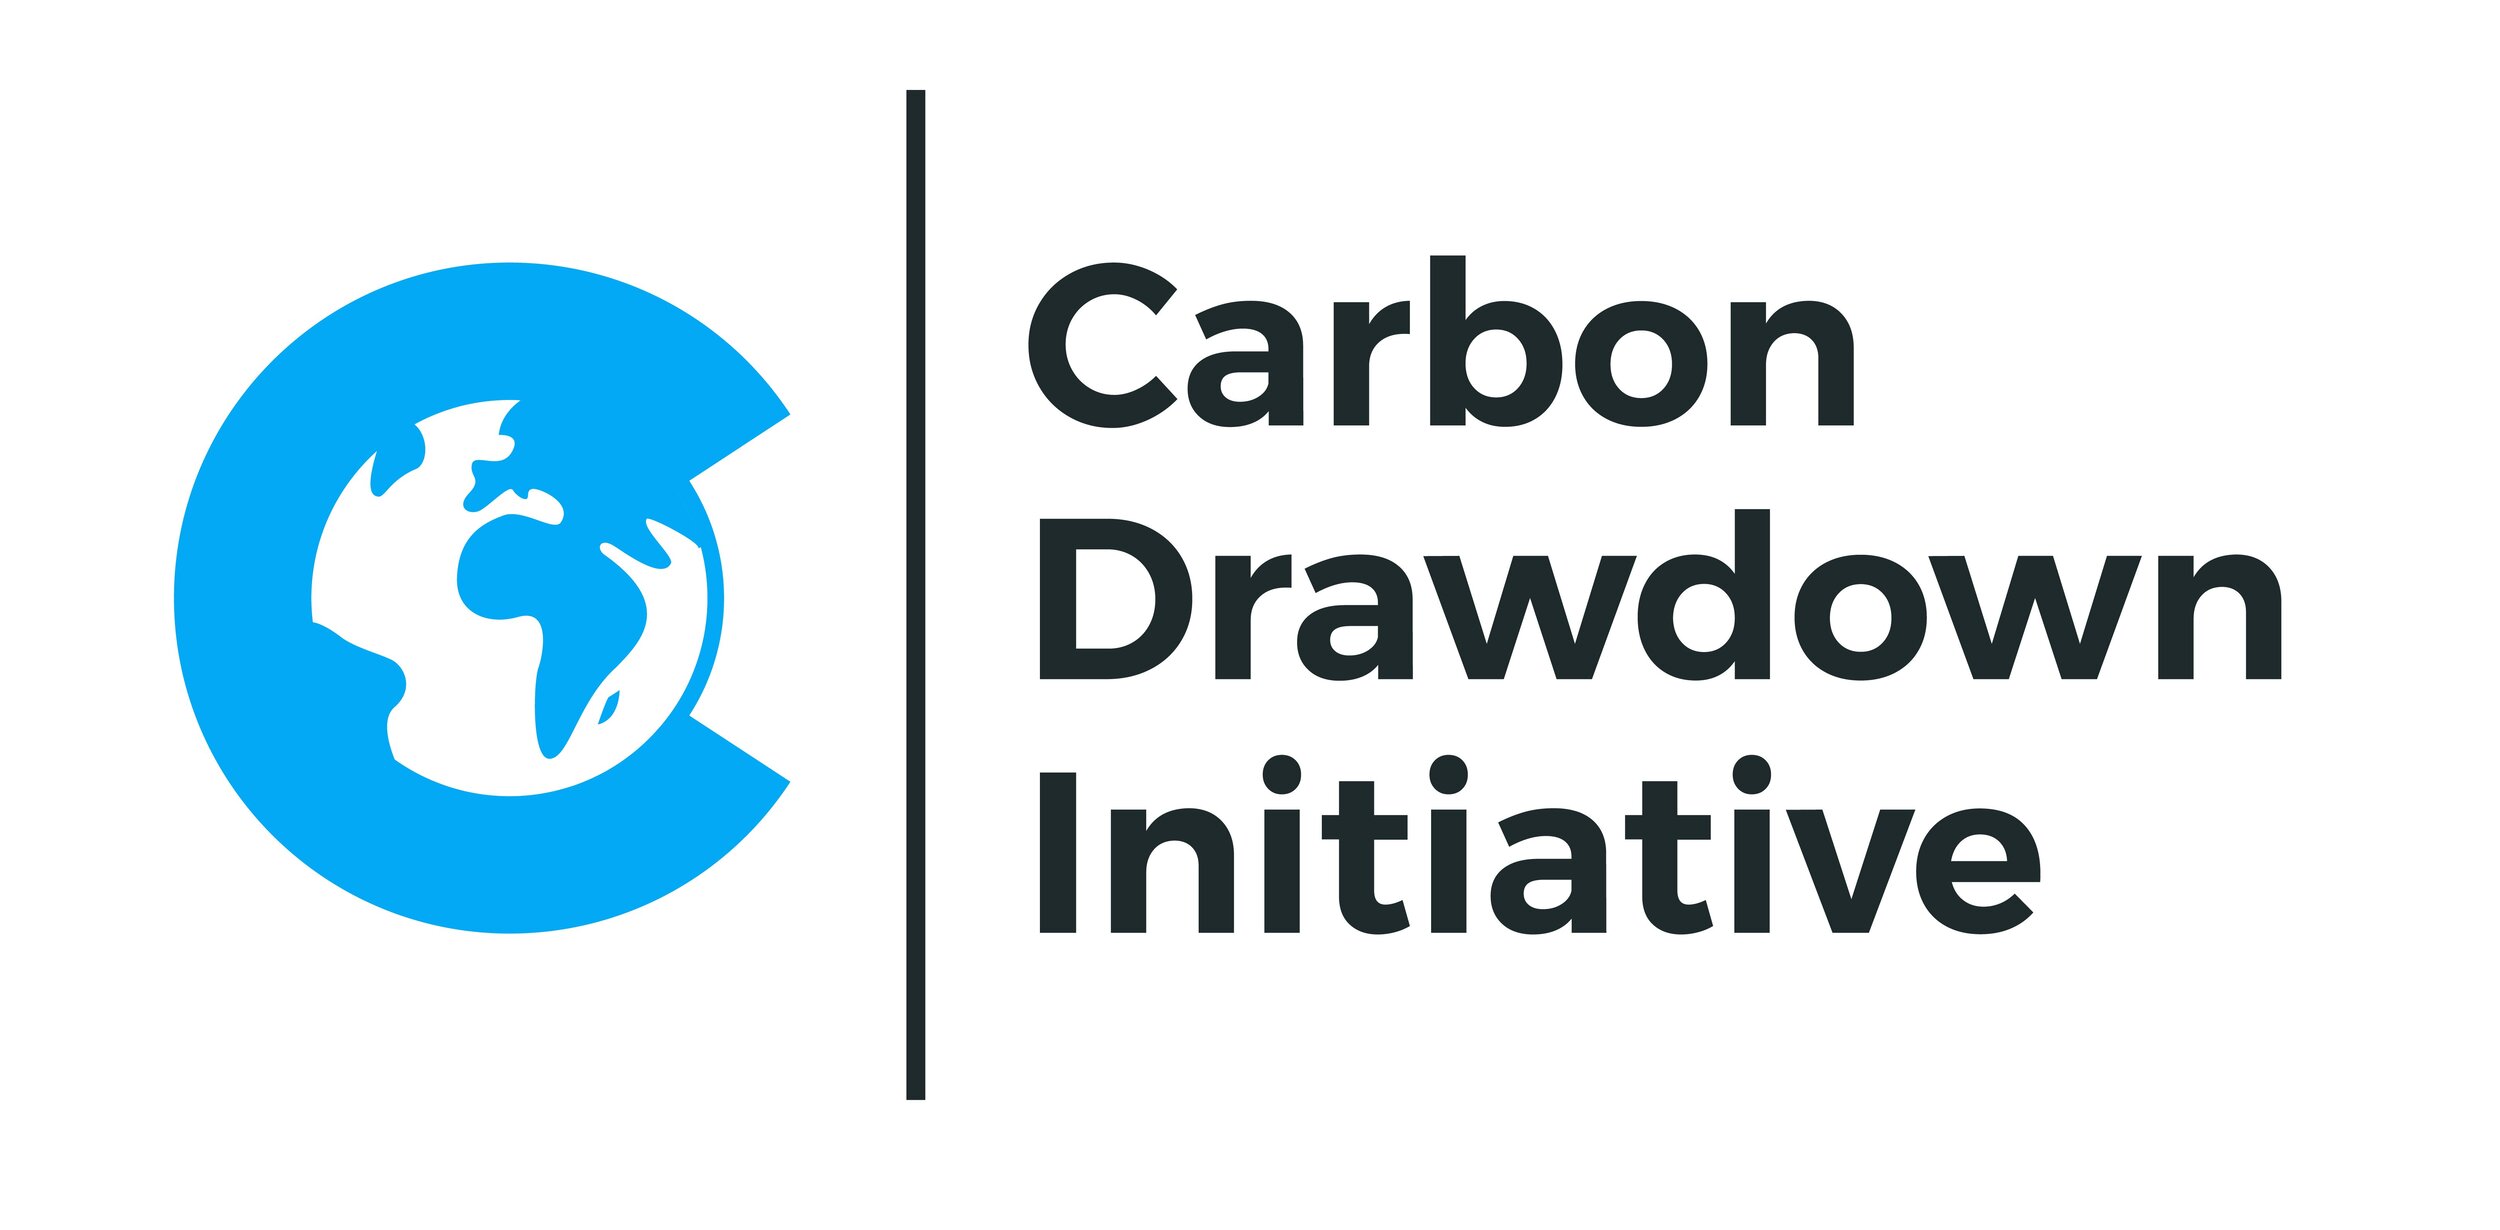 Carbon Drawdown Initiative